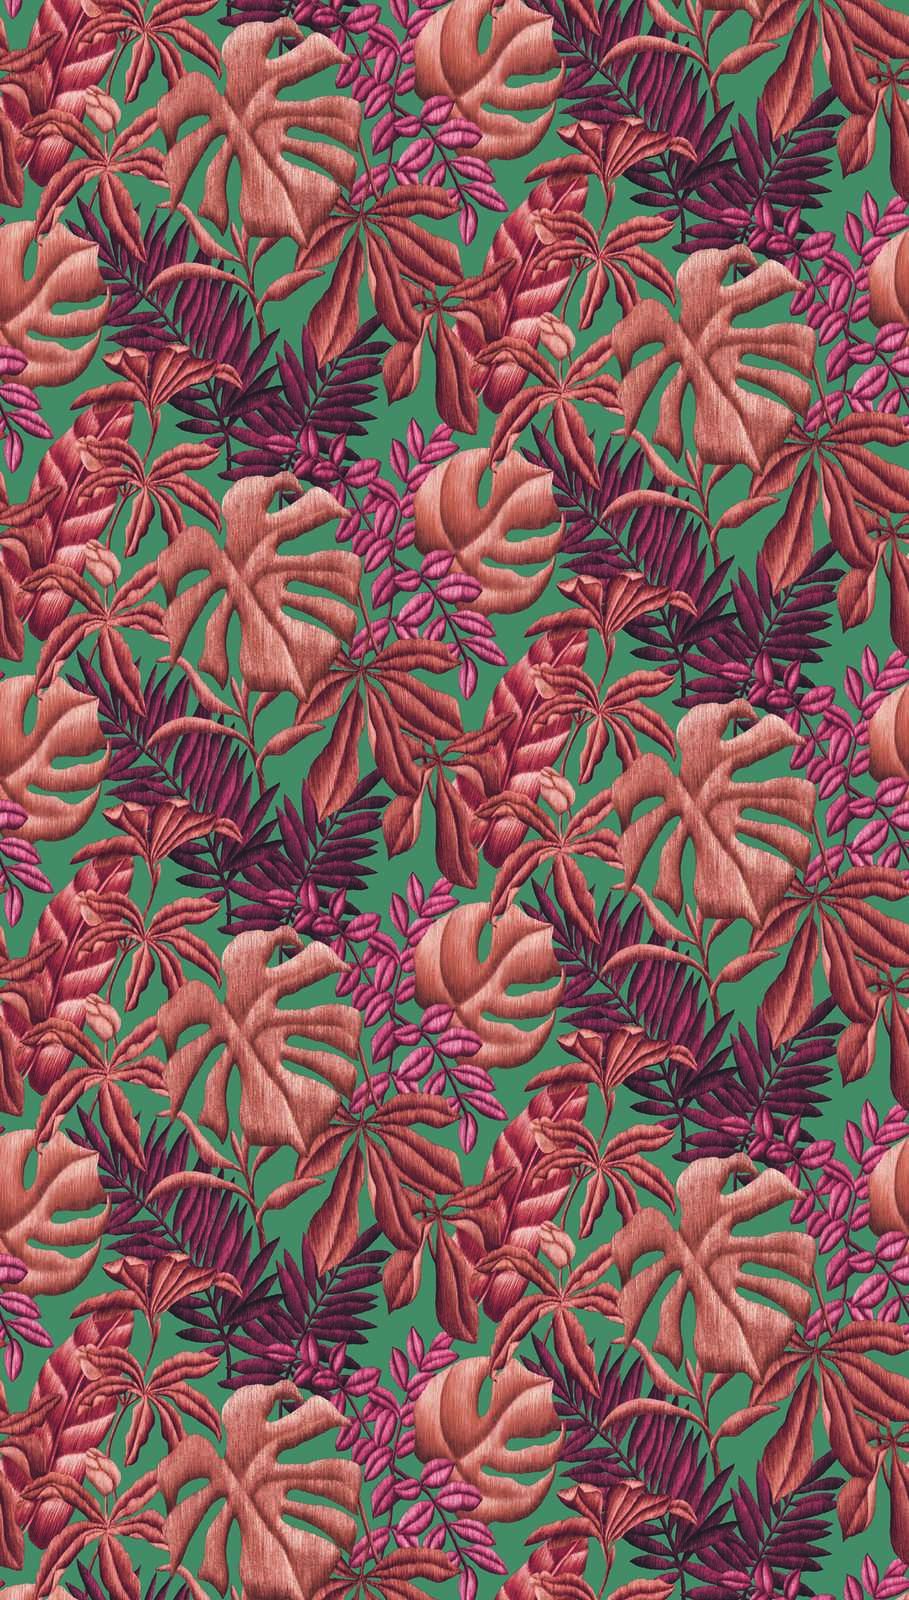             Papier peint à grands motifs de feuilles de fougère et de bananier - rouge, orange, turquoise
        